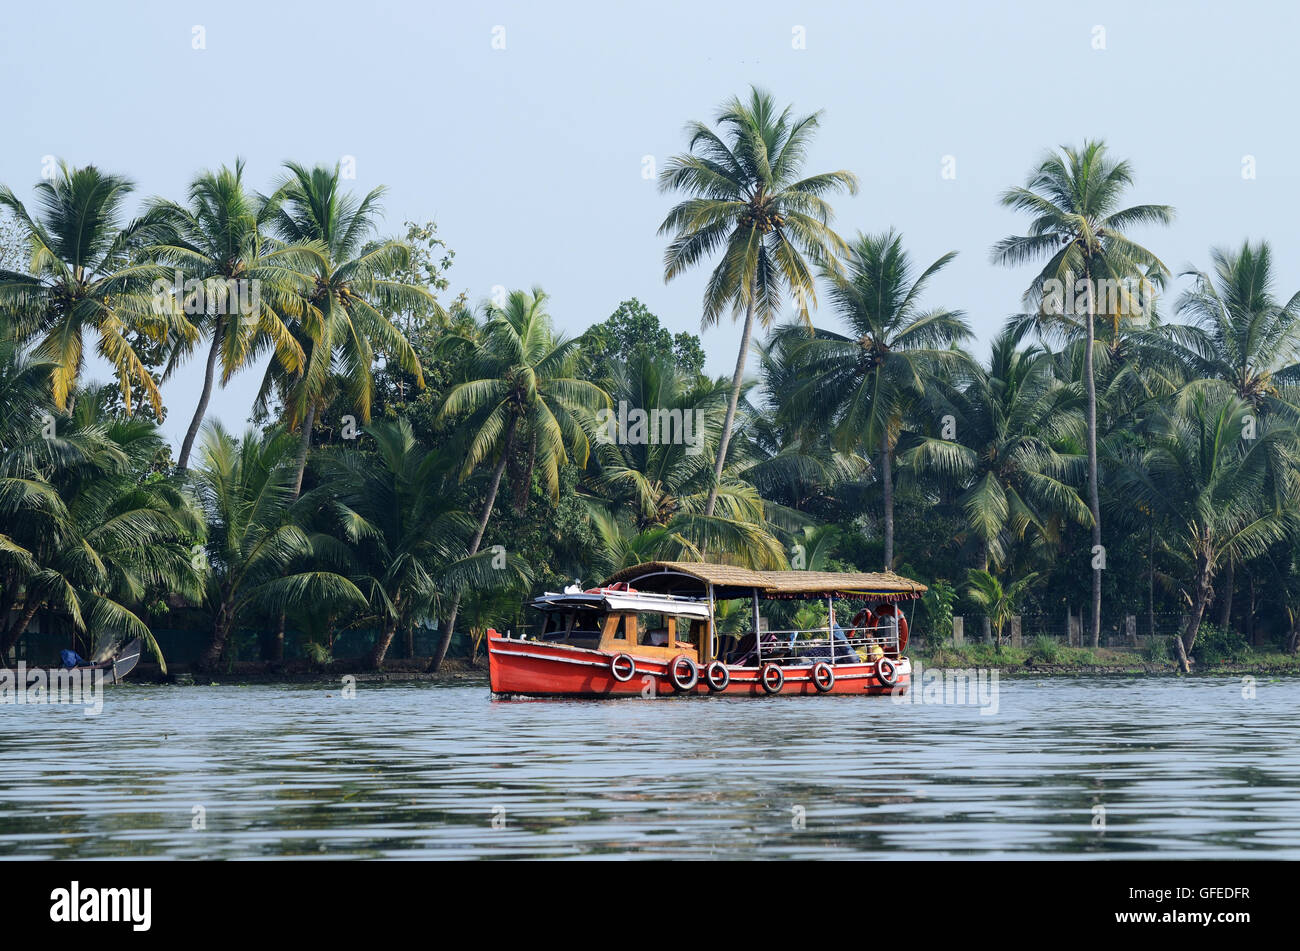 Touristenboot in Kerala Backwaters, Alleppey, Telugu ist eine Kette von Lagunen und Seen in der Nähe von Arabisches Meer (Malabar-Küste) Stockfoto